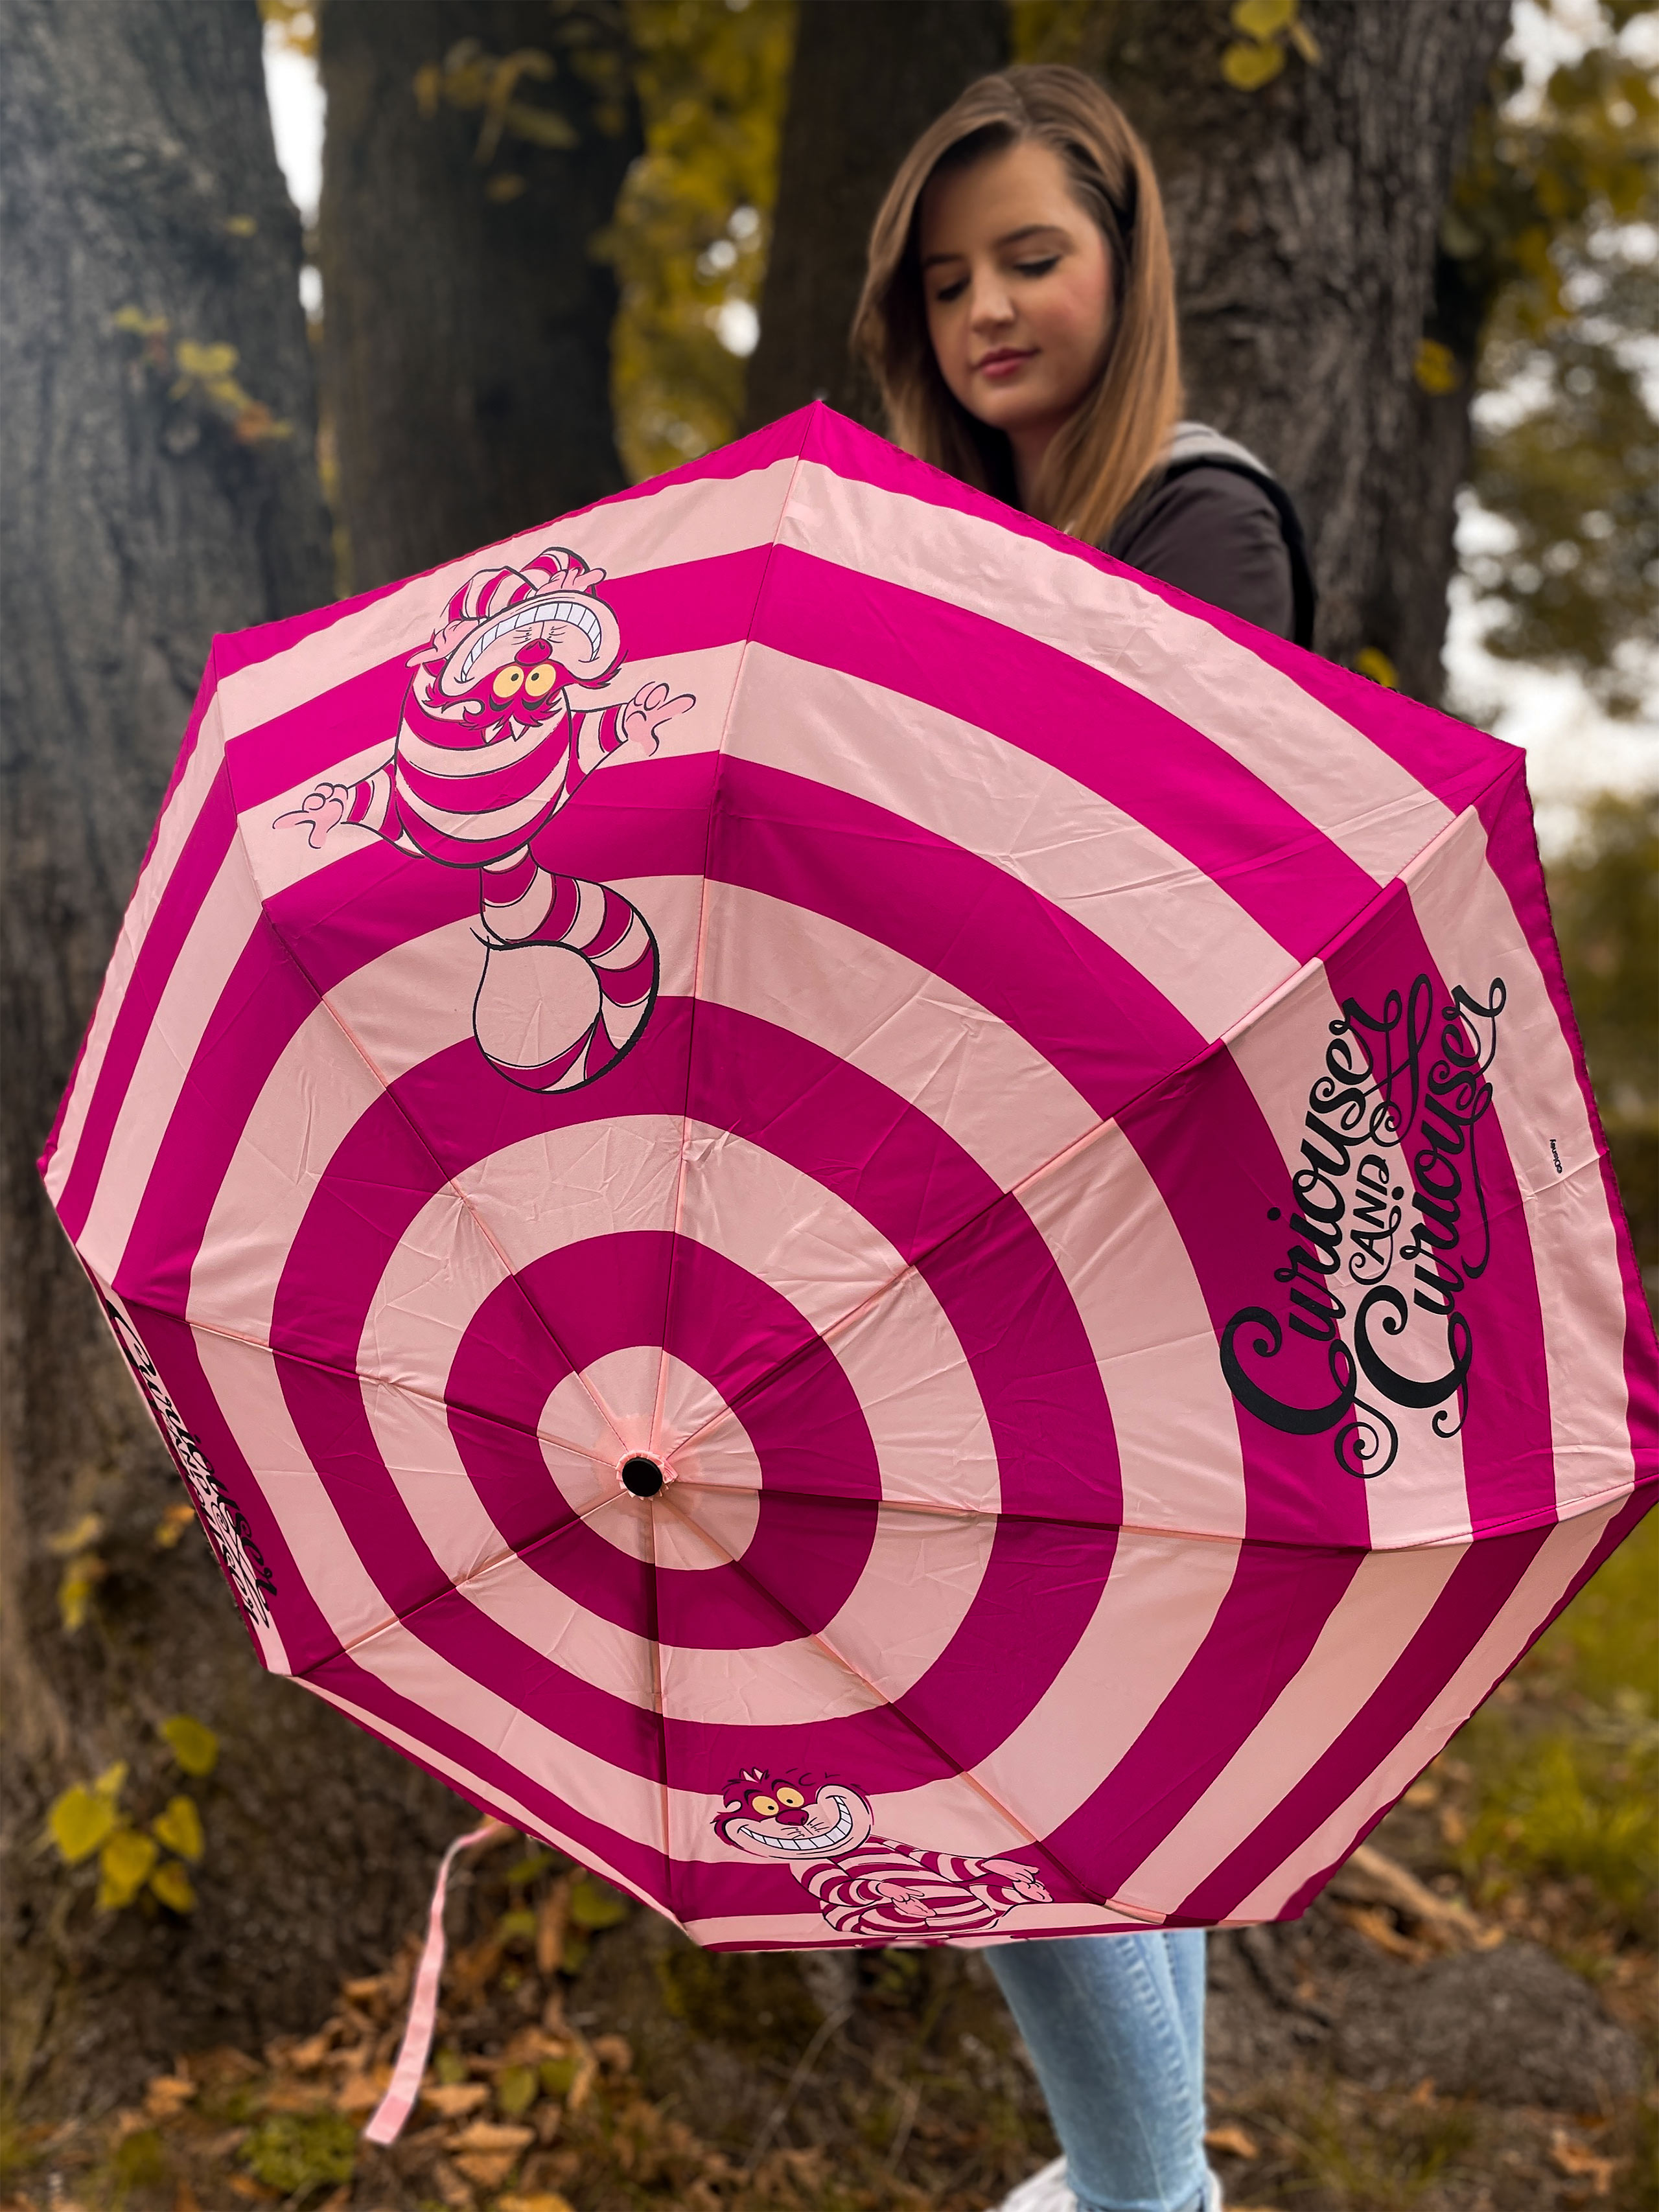 Alice im Wunderland - Grinsekatze Schirm